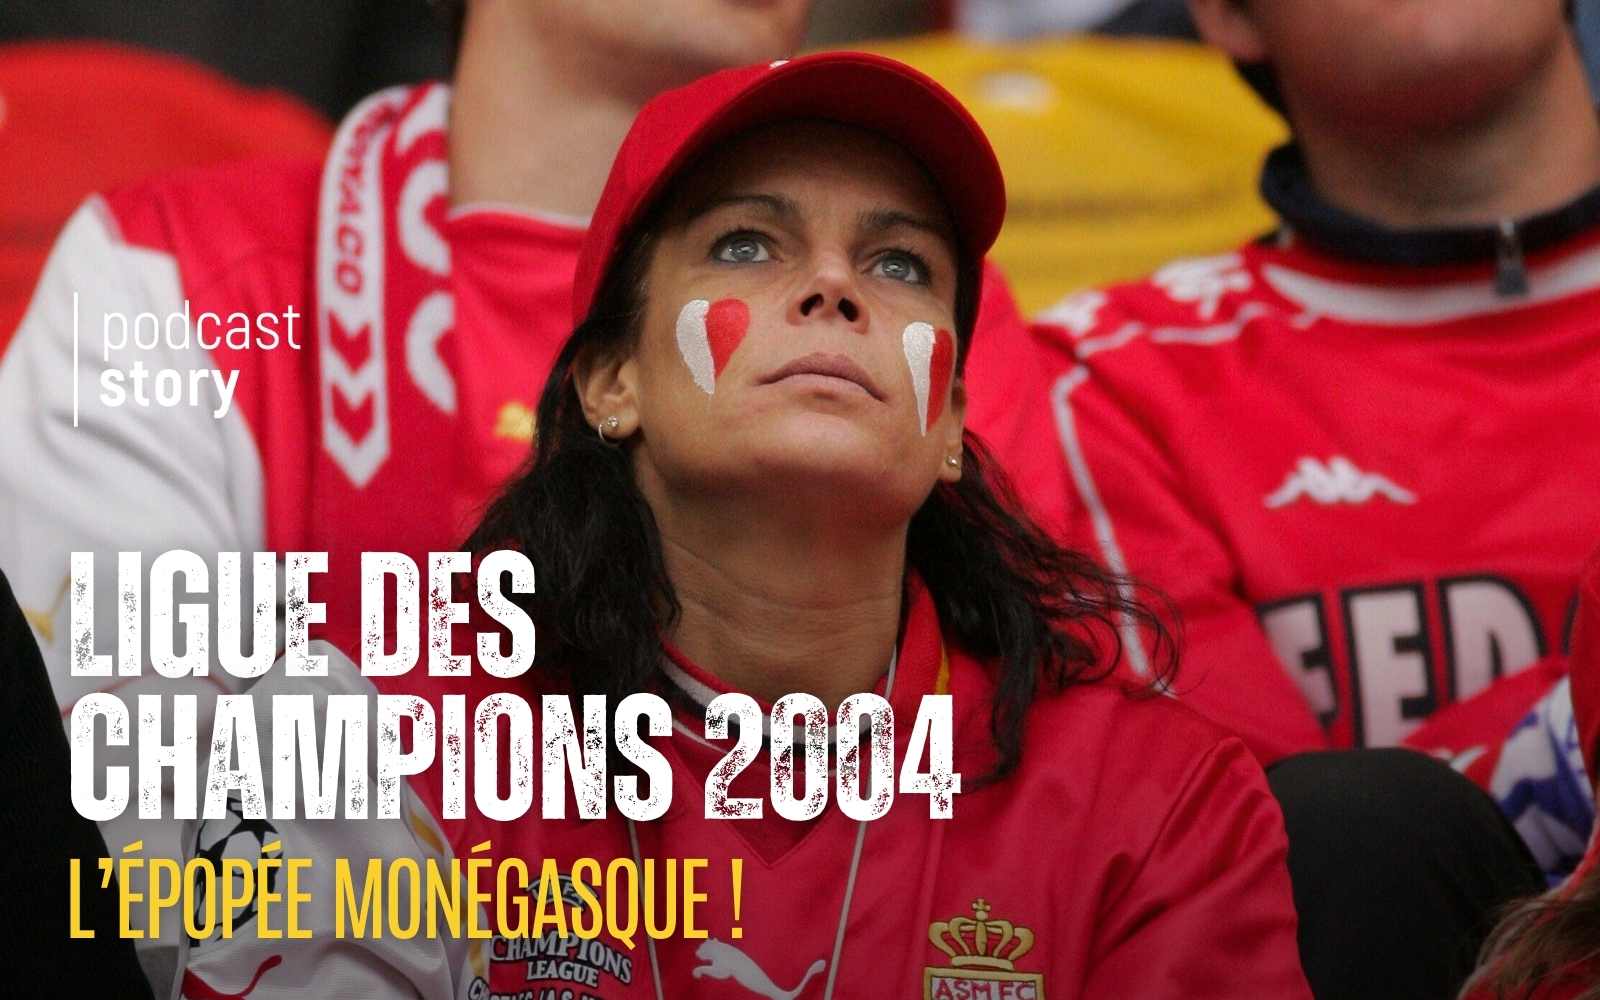 LIGUE DES CHAMPIONS 2004 – L’ÉPOPÉE MONÉGASQUE !